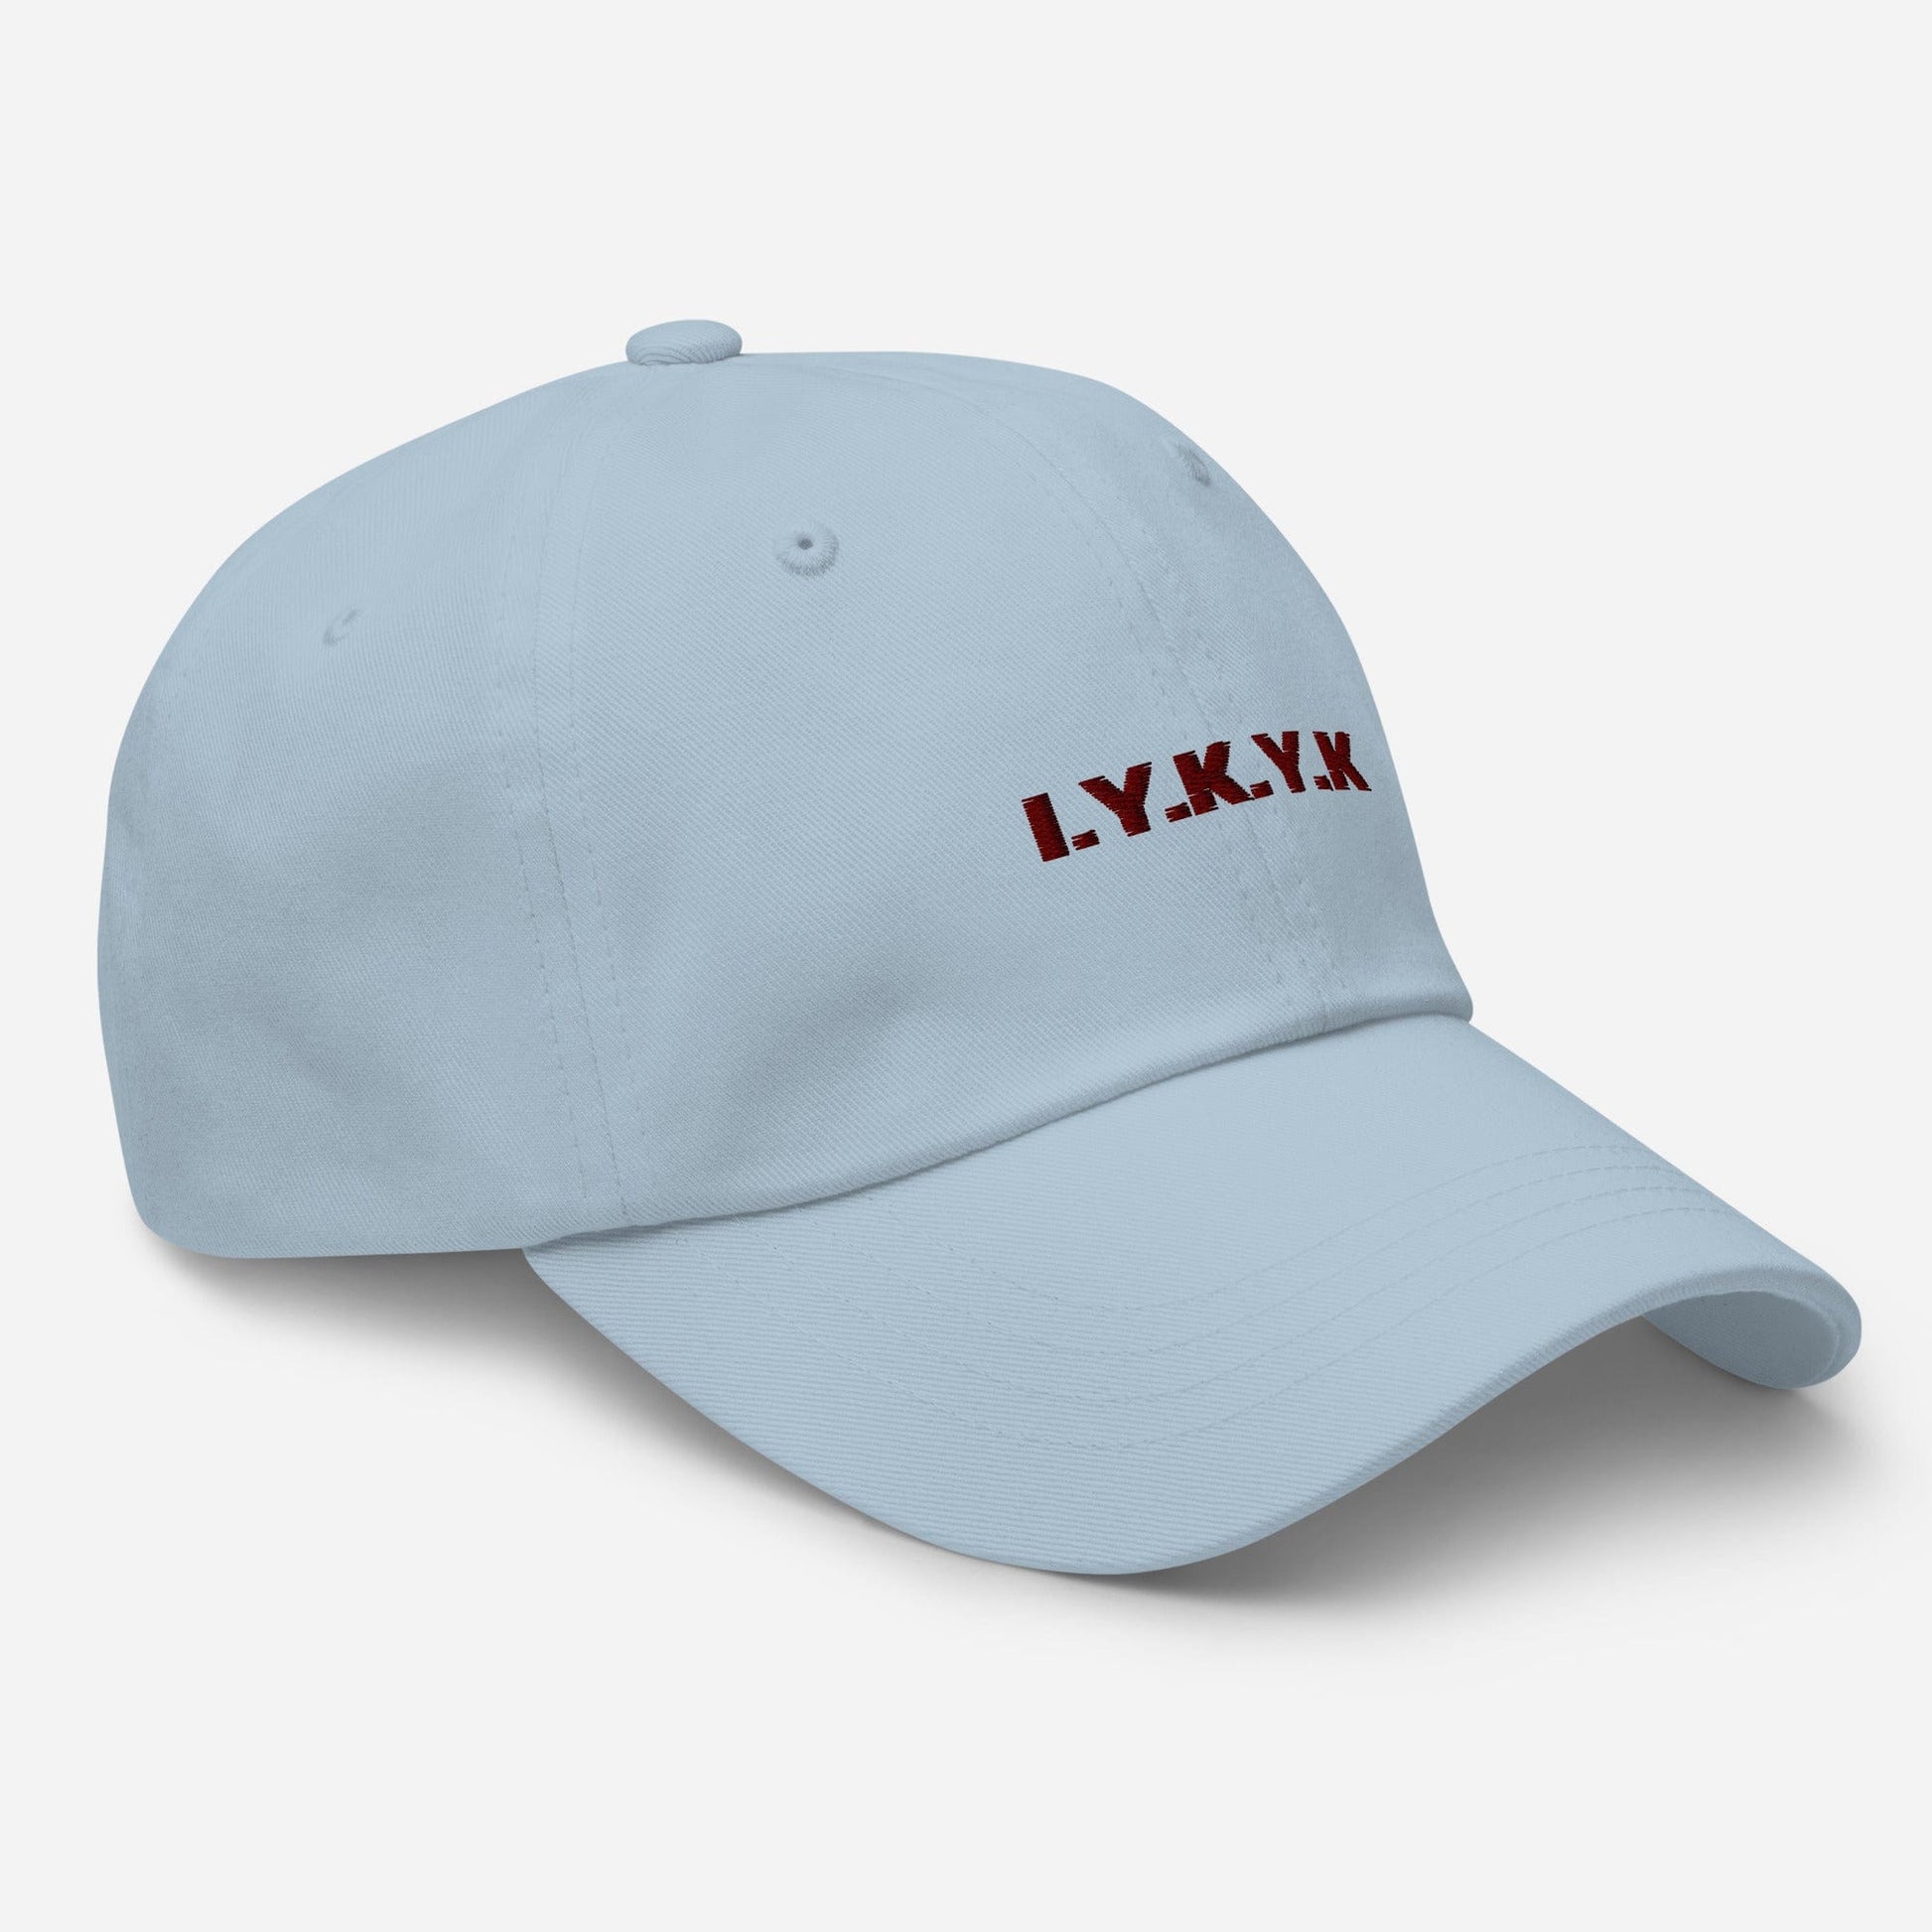 I.Y.K.Y.K Dad hat-Olettop